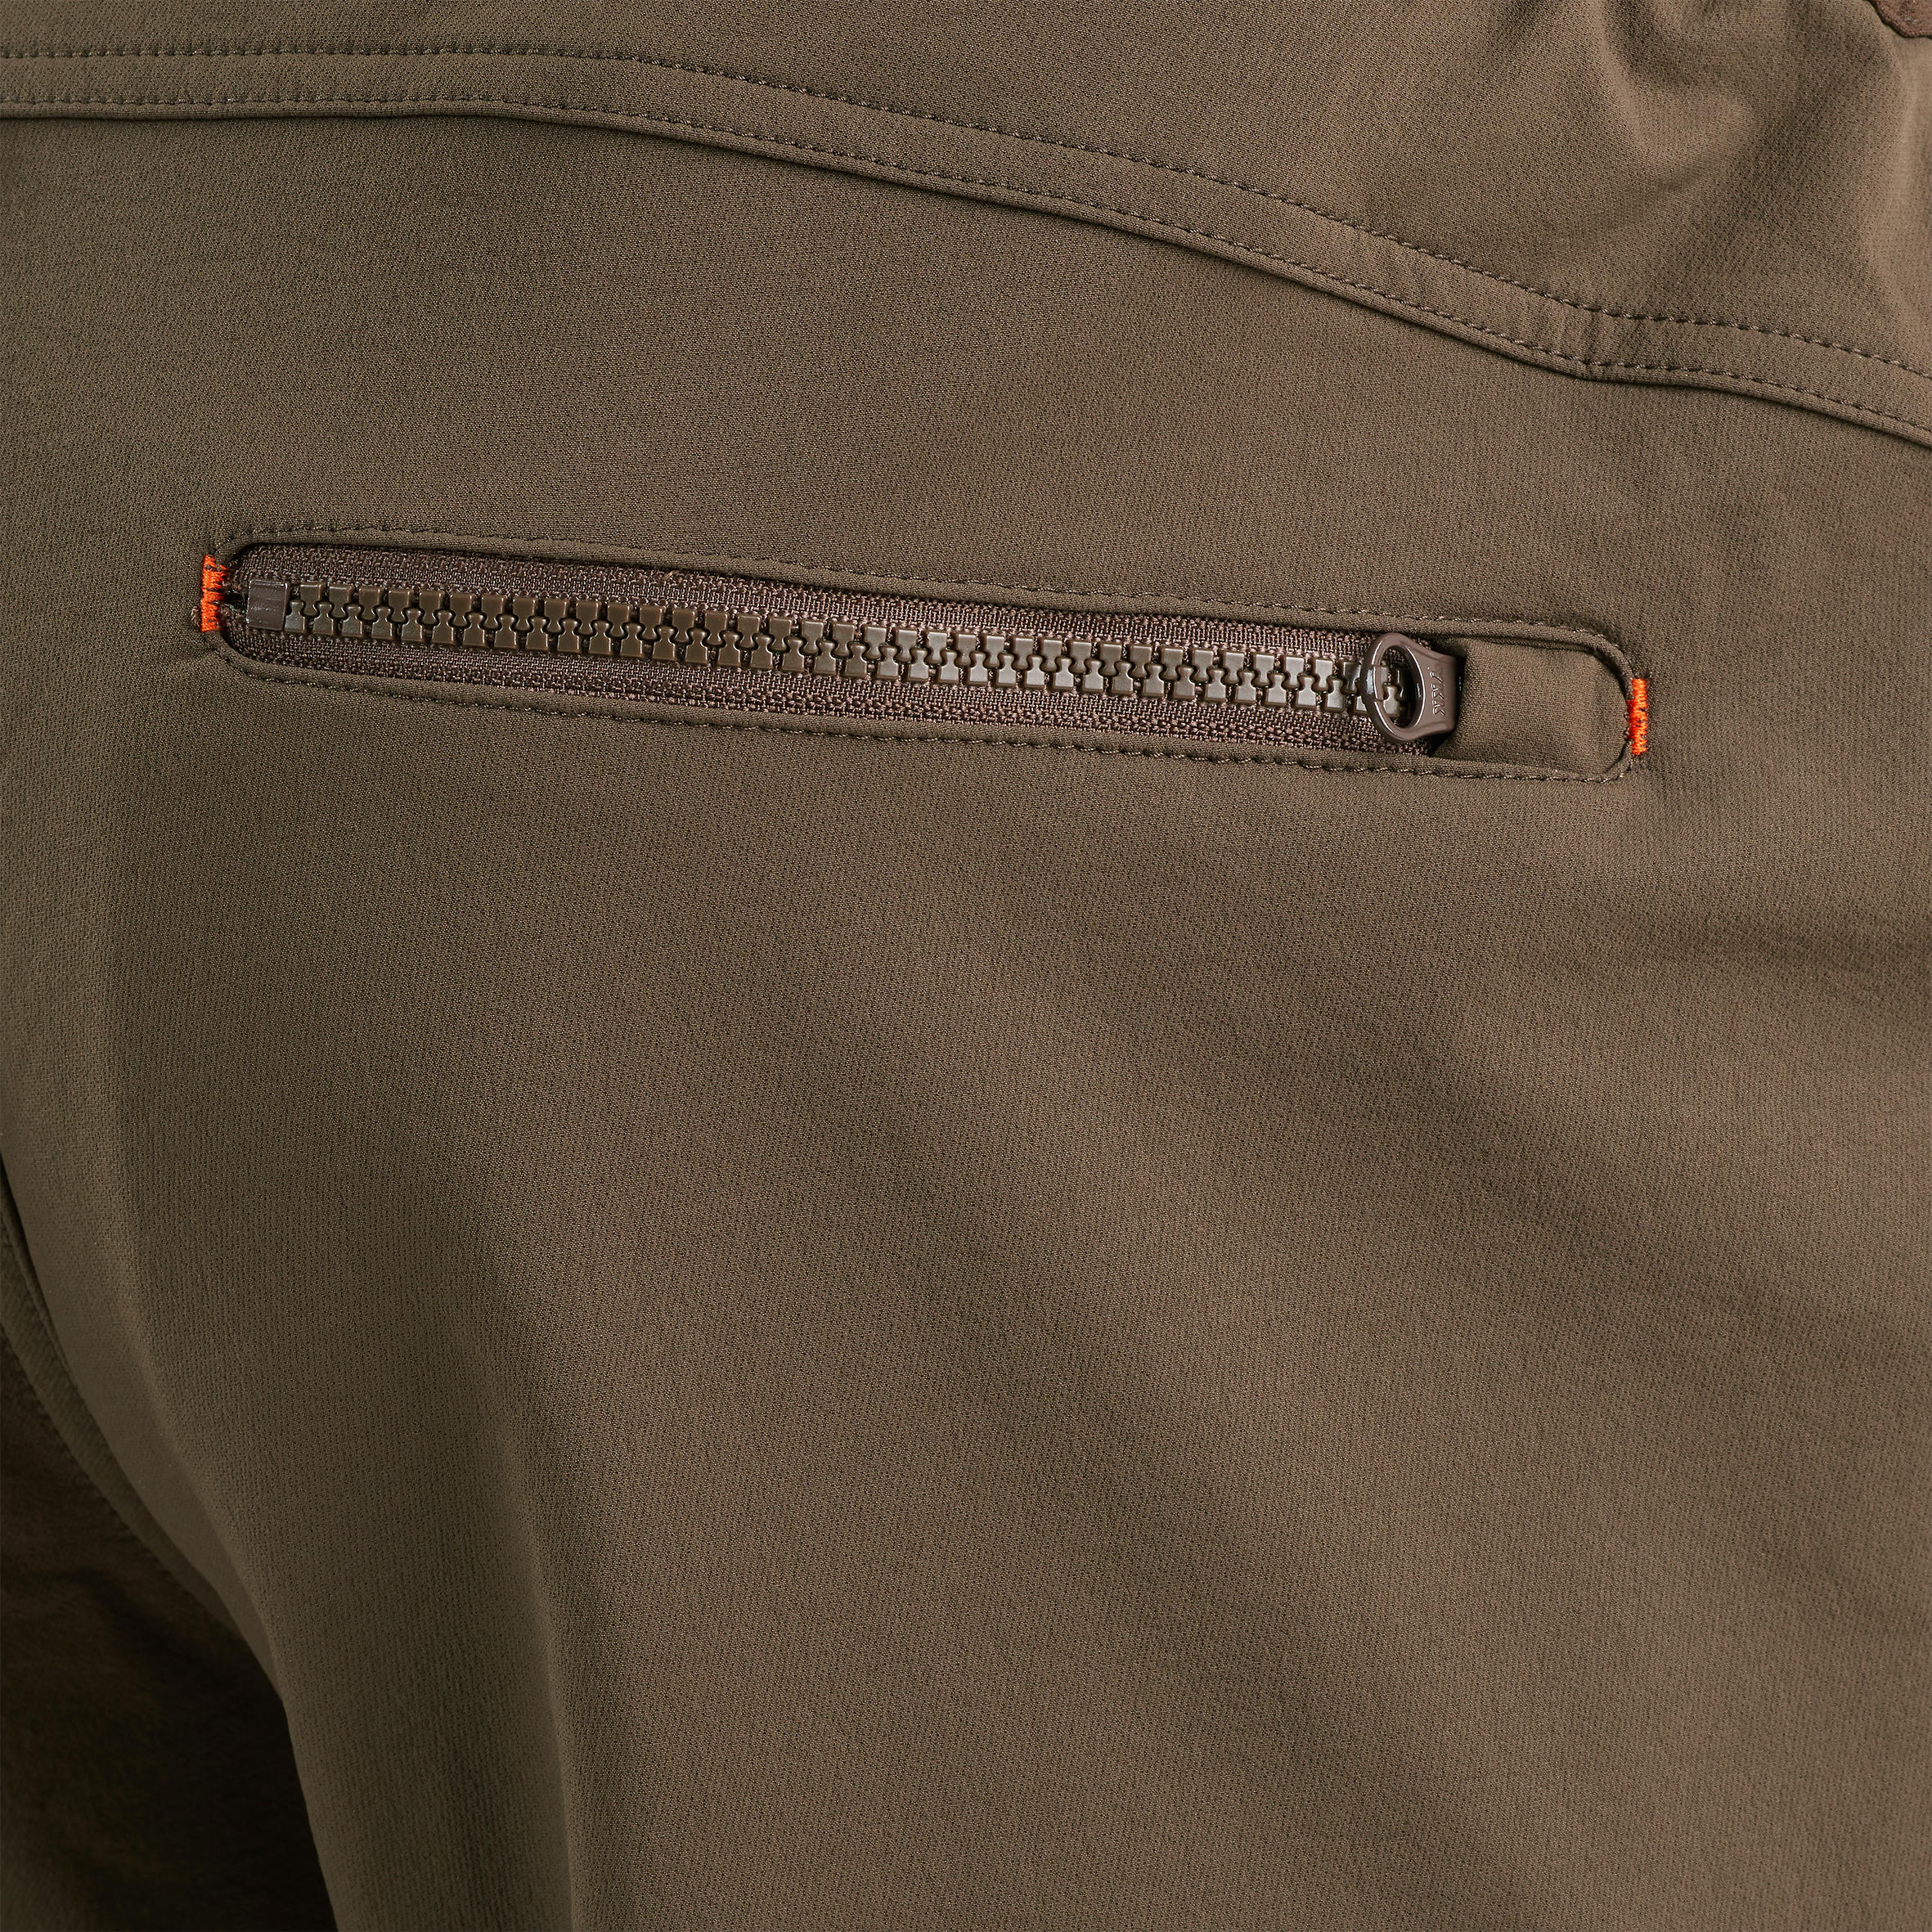 Pantalon de chasse temps sec - Renfort 500 marron - SOLOGNAC